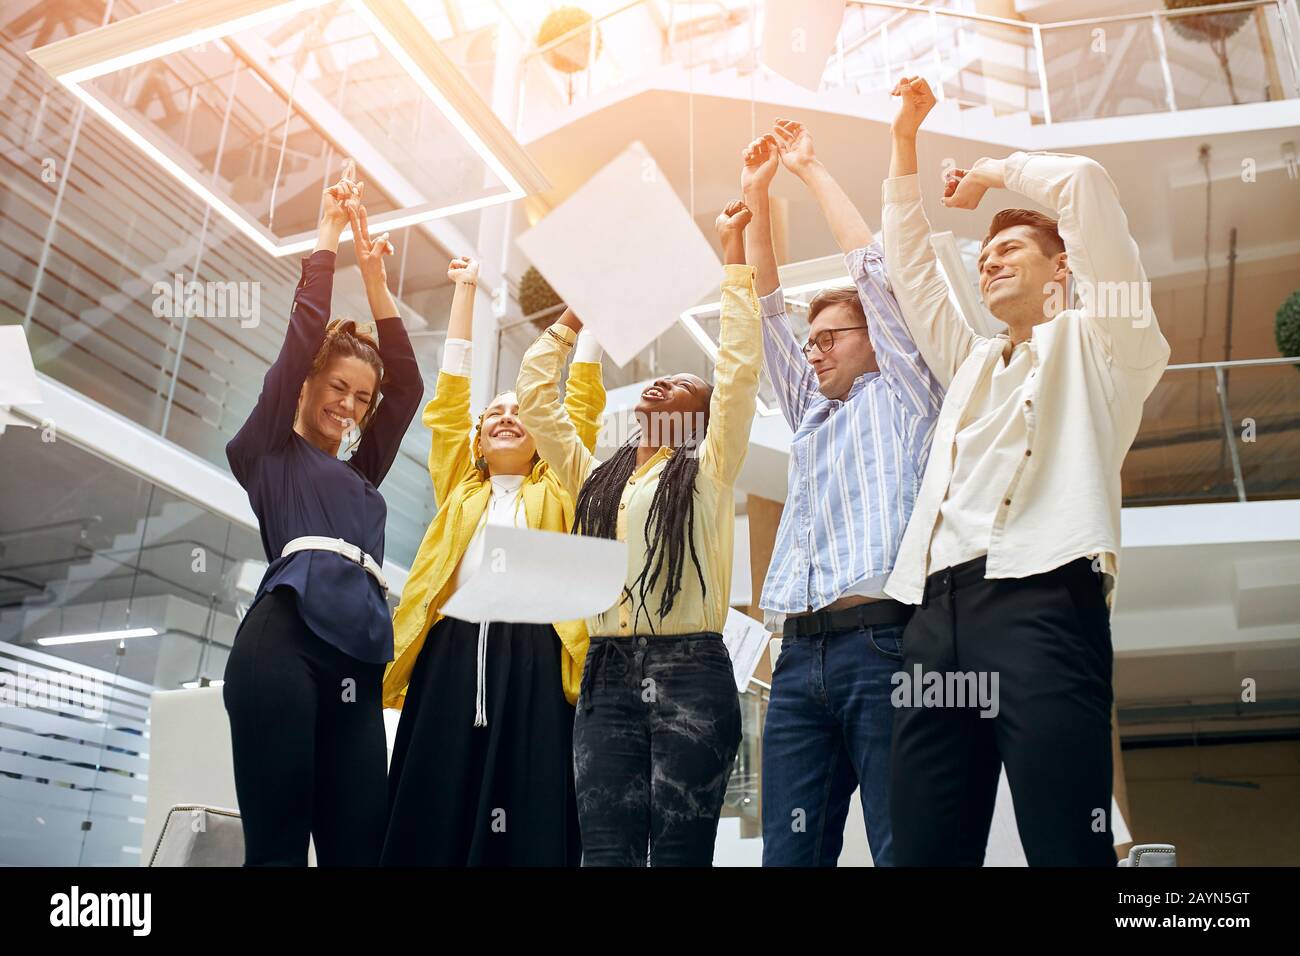 il vivace team aziendale celebra la vittoria aziendale insieme in ufficio, il felice gruppo di professionisti gioiosi gioisce per la vittoria Foto Stock